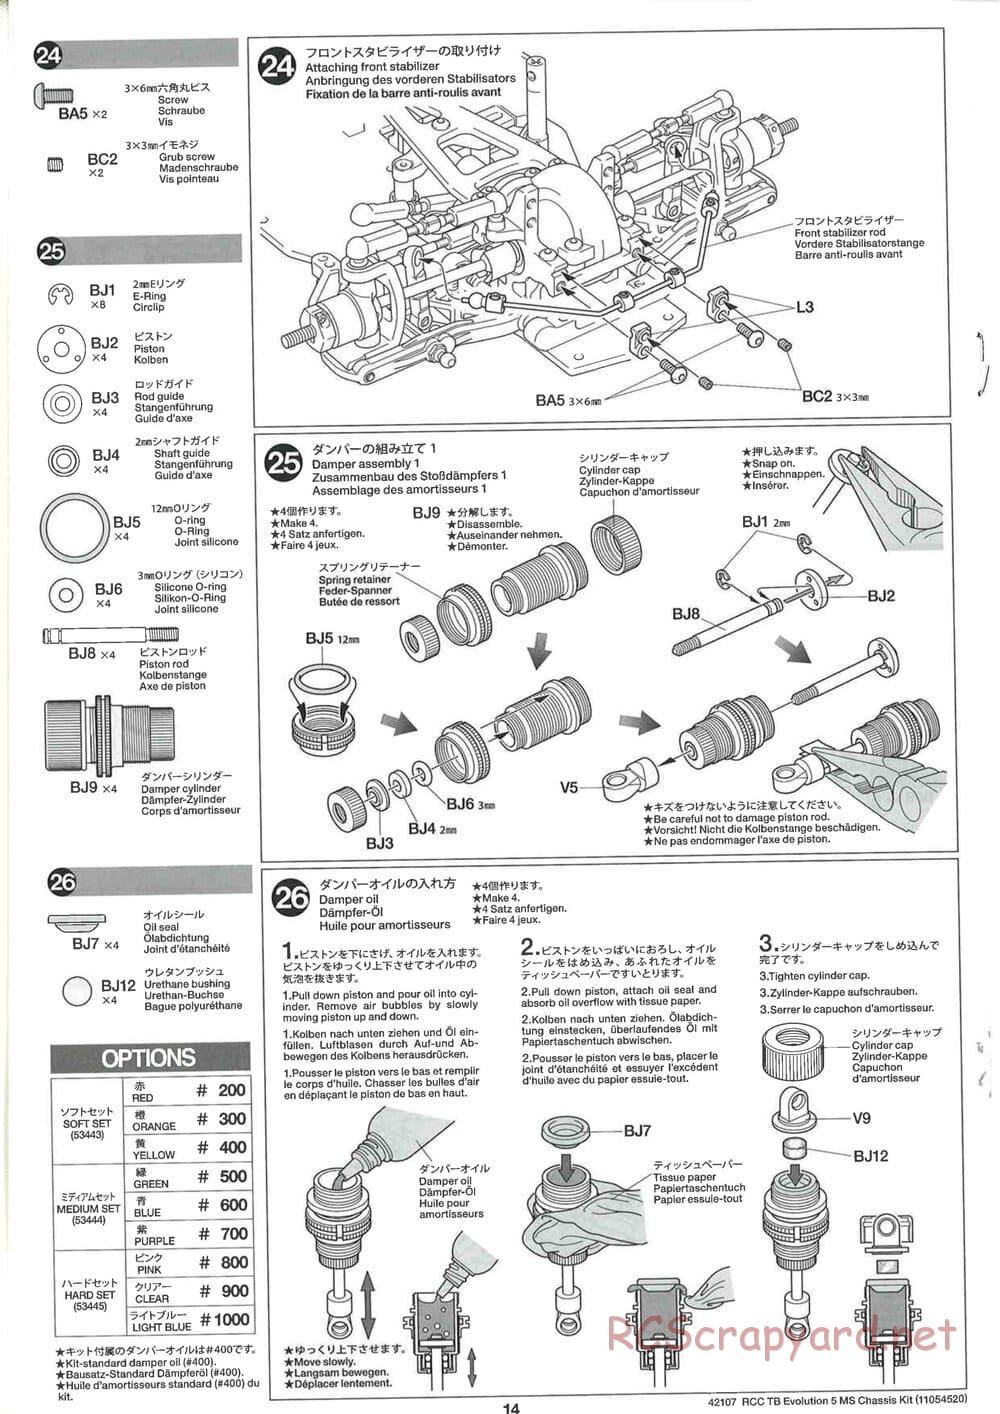 Tamiya - TB Evolution 5 MS Chassis - Manual - Page 14